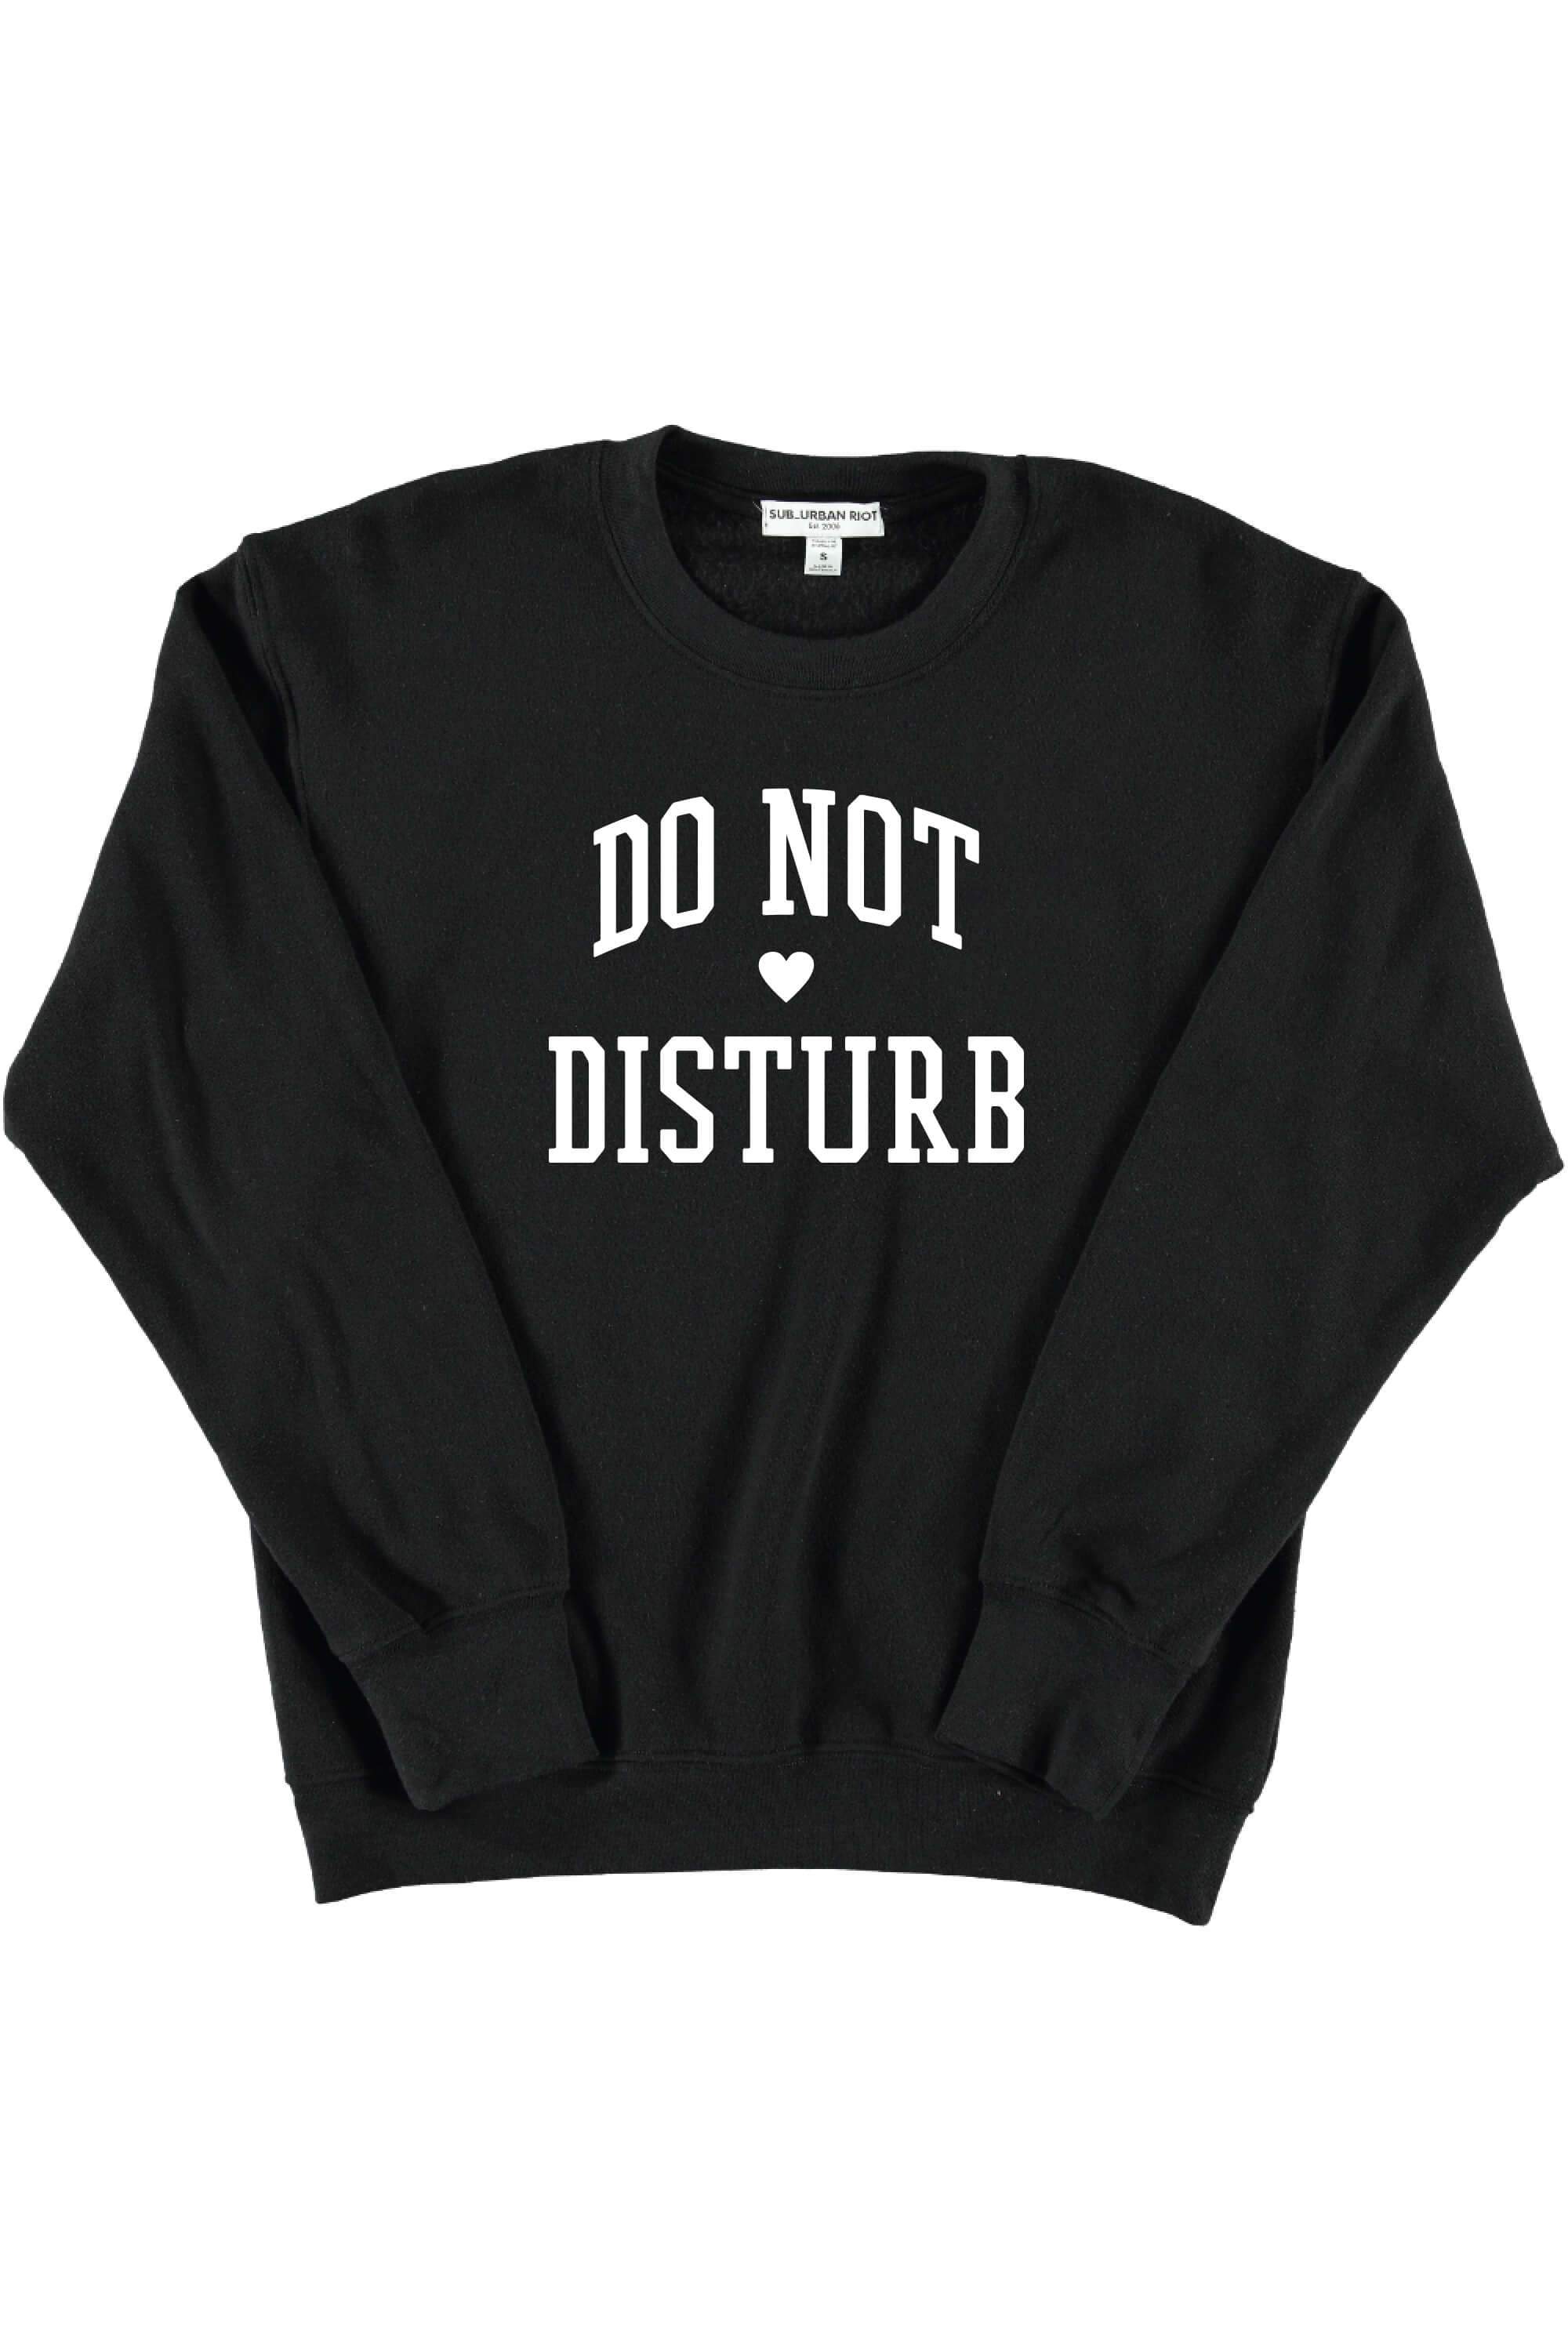 Do Not Disturb Selena Sweatshirt - Twinkle Twinkle Little One